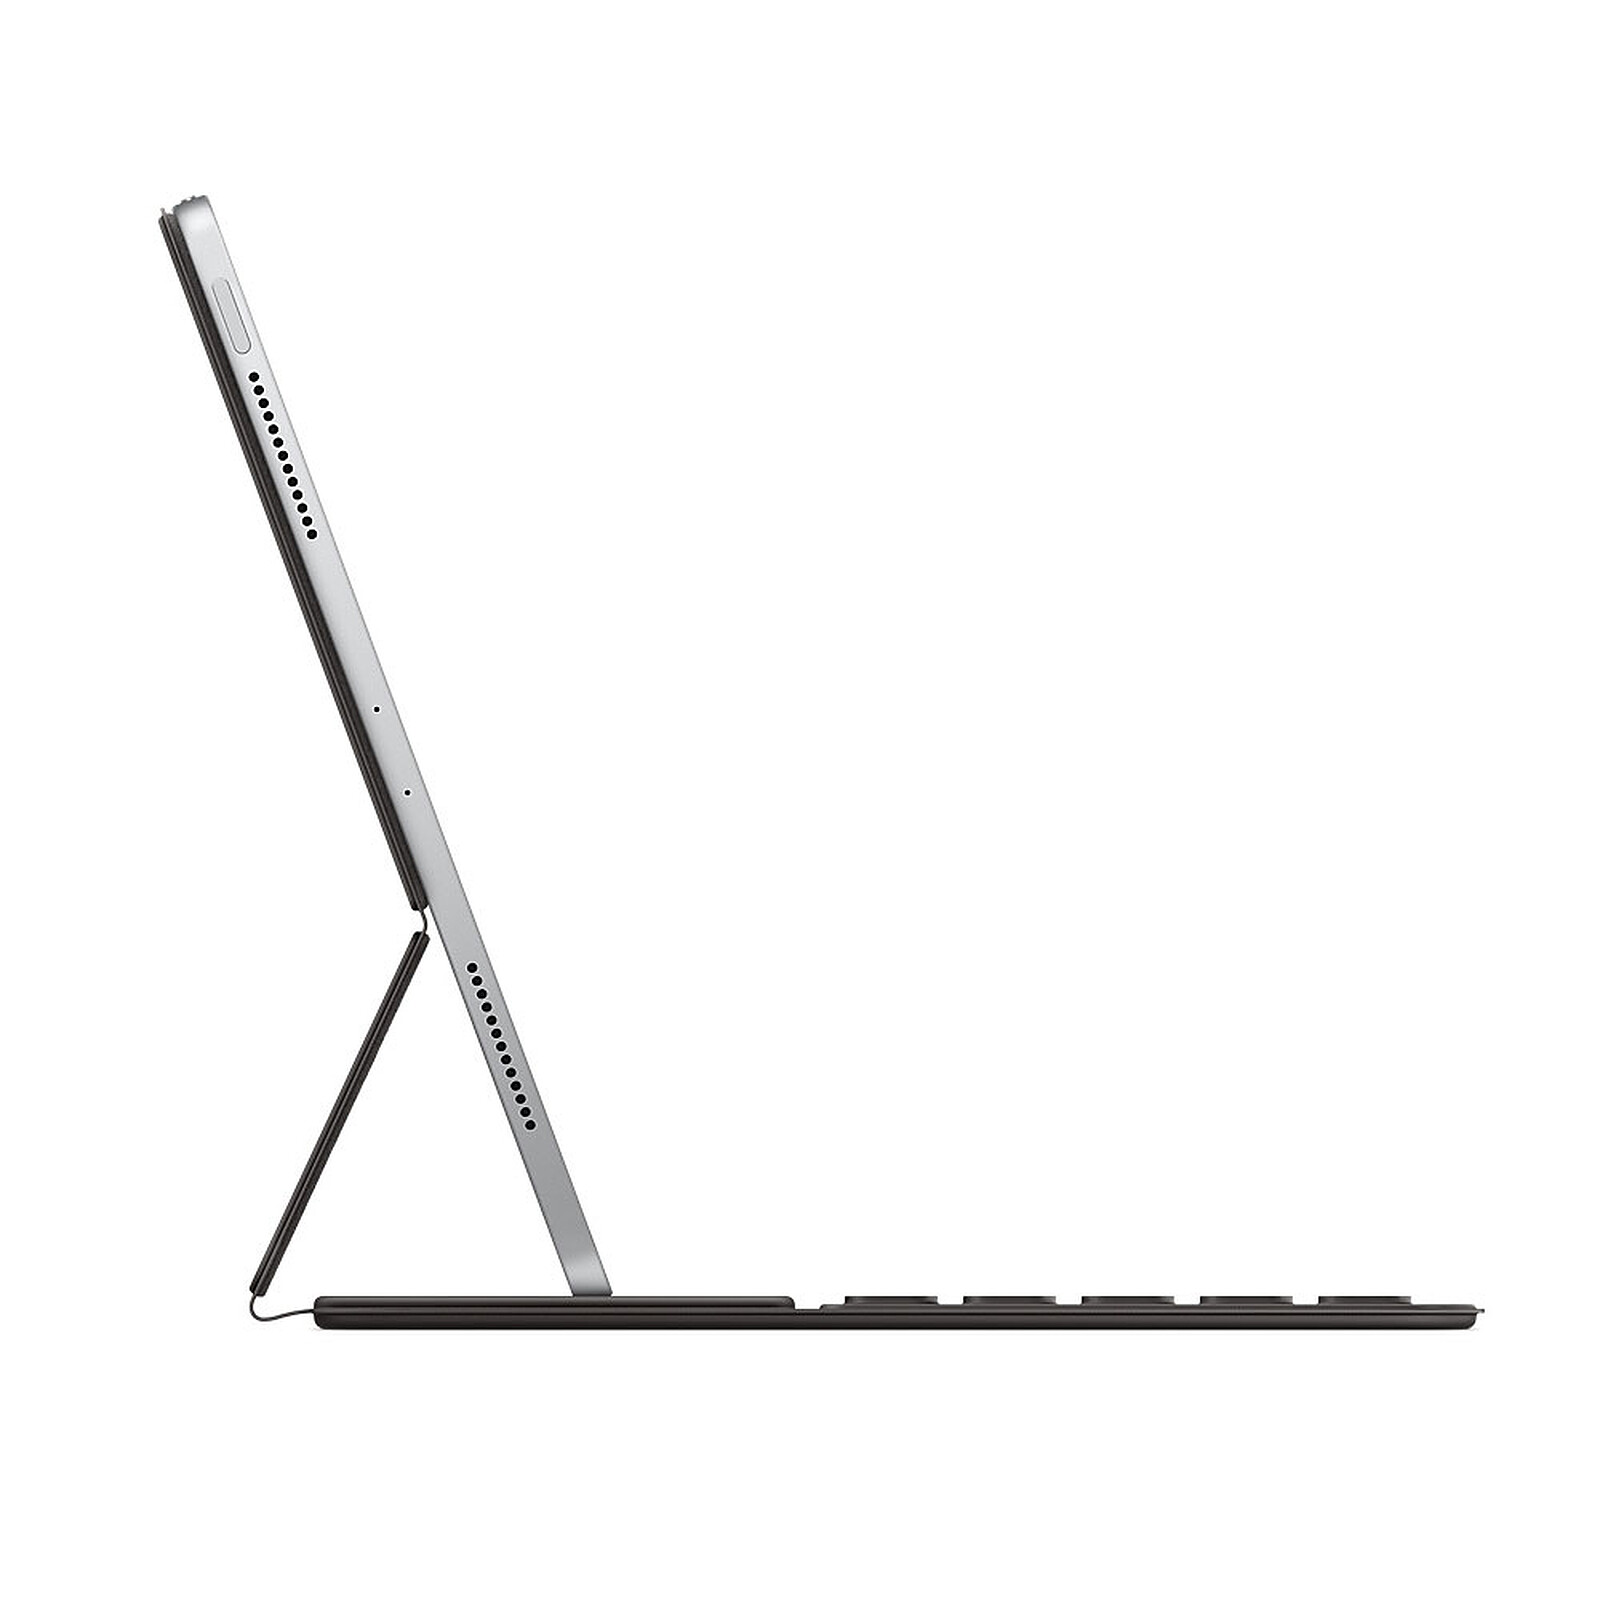 APPLE Clavier Smart Keyboard pour iPad (7ème génération) et iPad